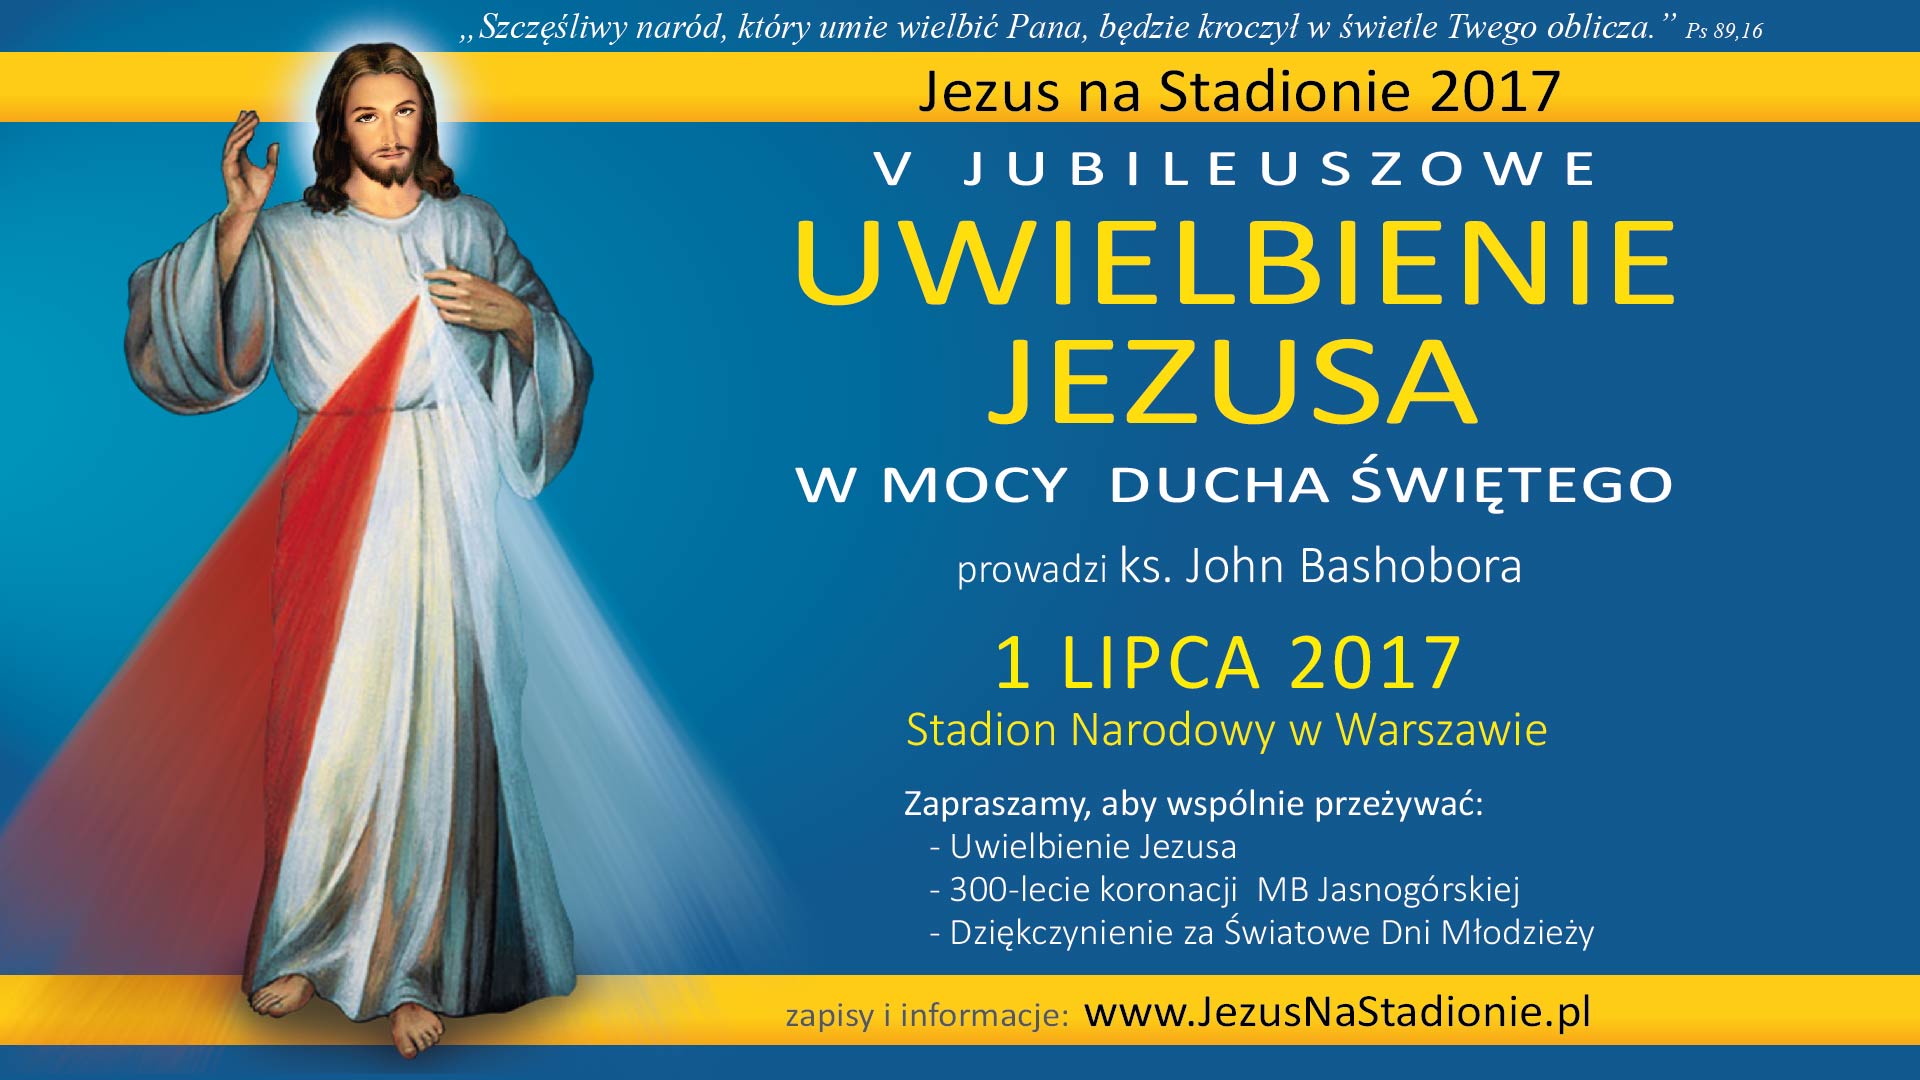 Jezus na Stadionie 2017